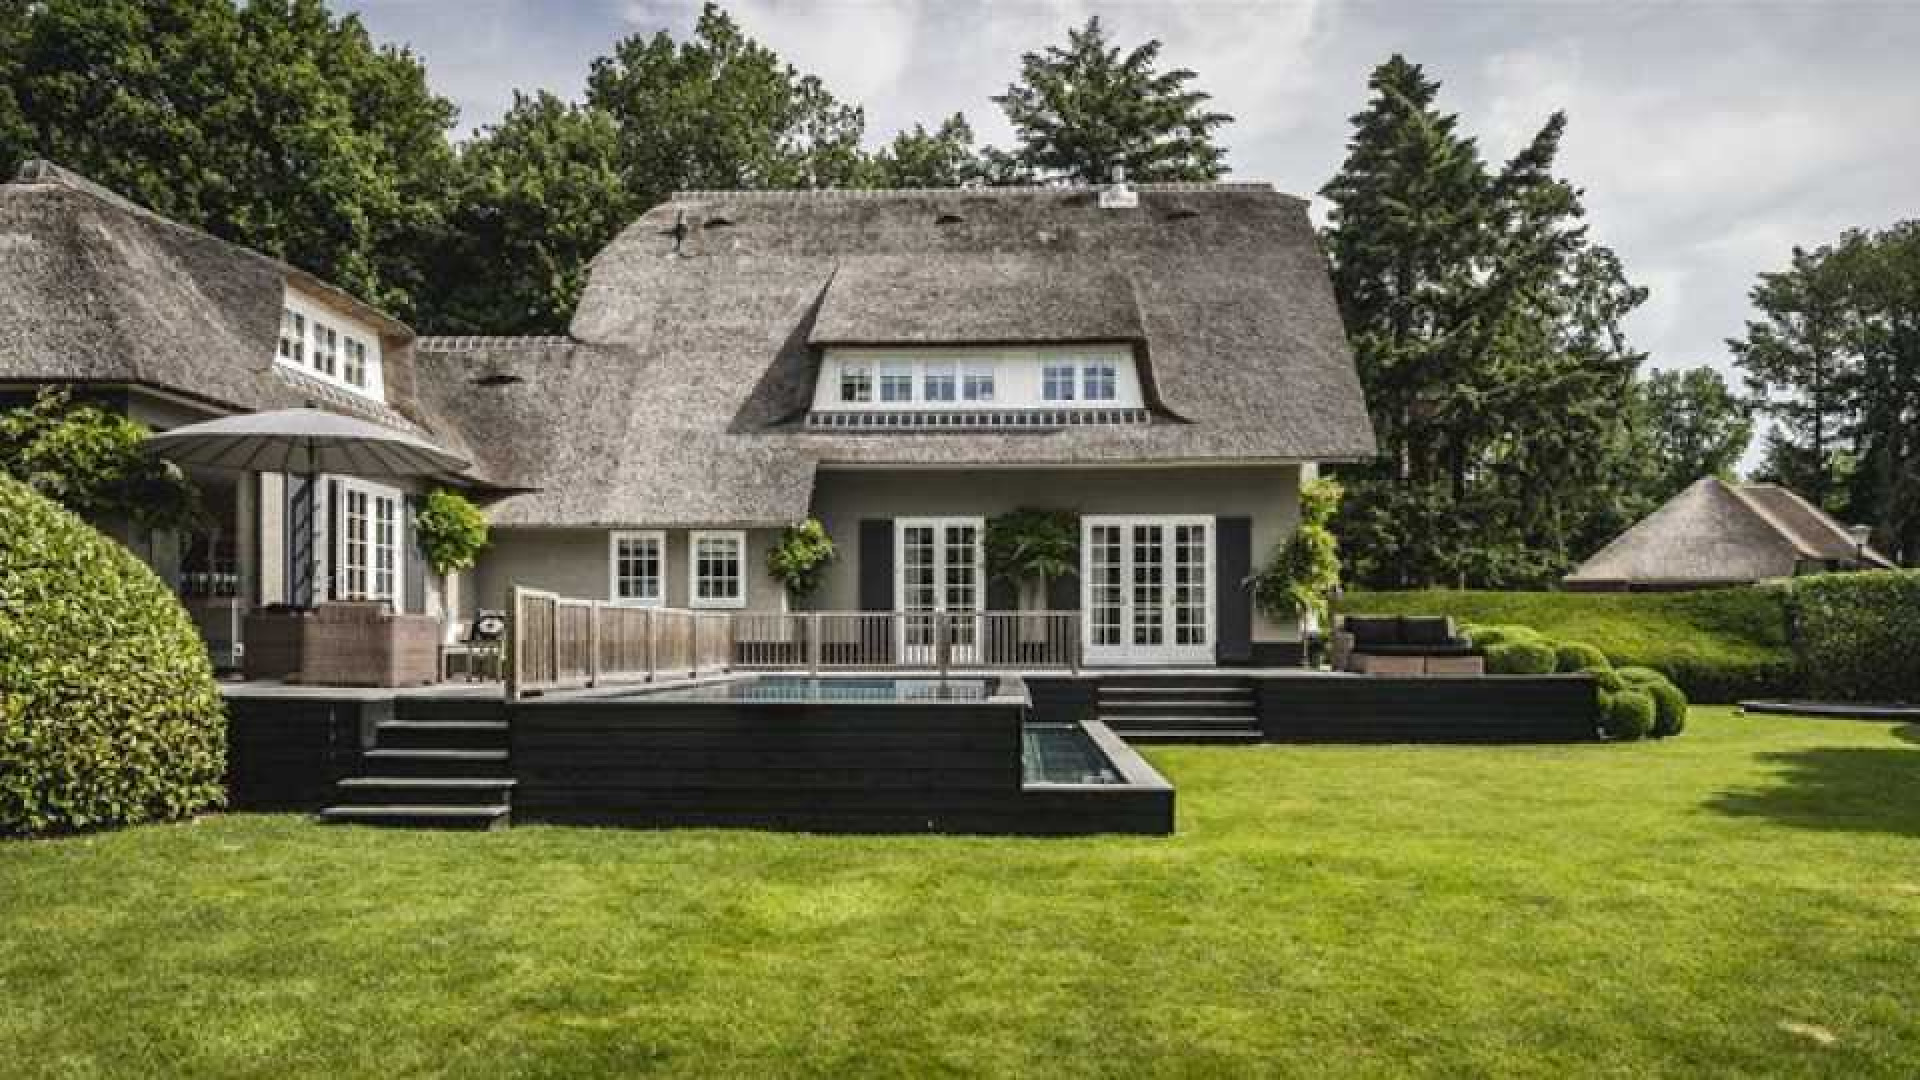 Winston en Renate Gerschtanowitz zetten hun villa met buiten zwembad te koop. Zie foto's 2